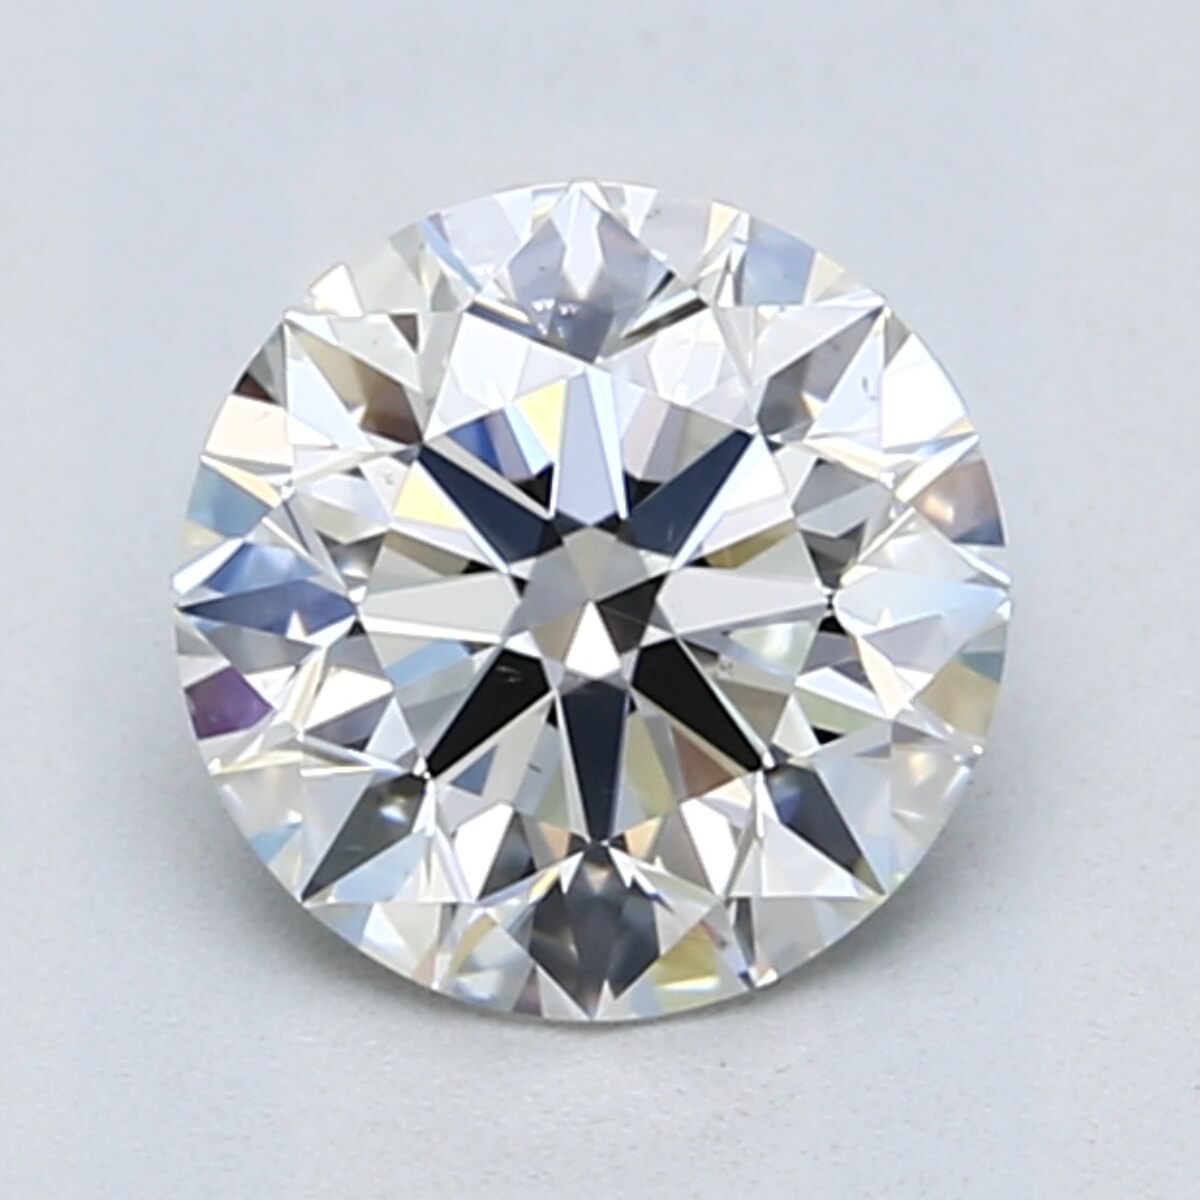 1.5 carat G color diamond